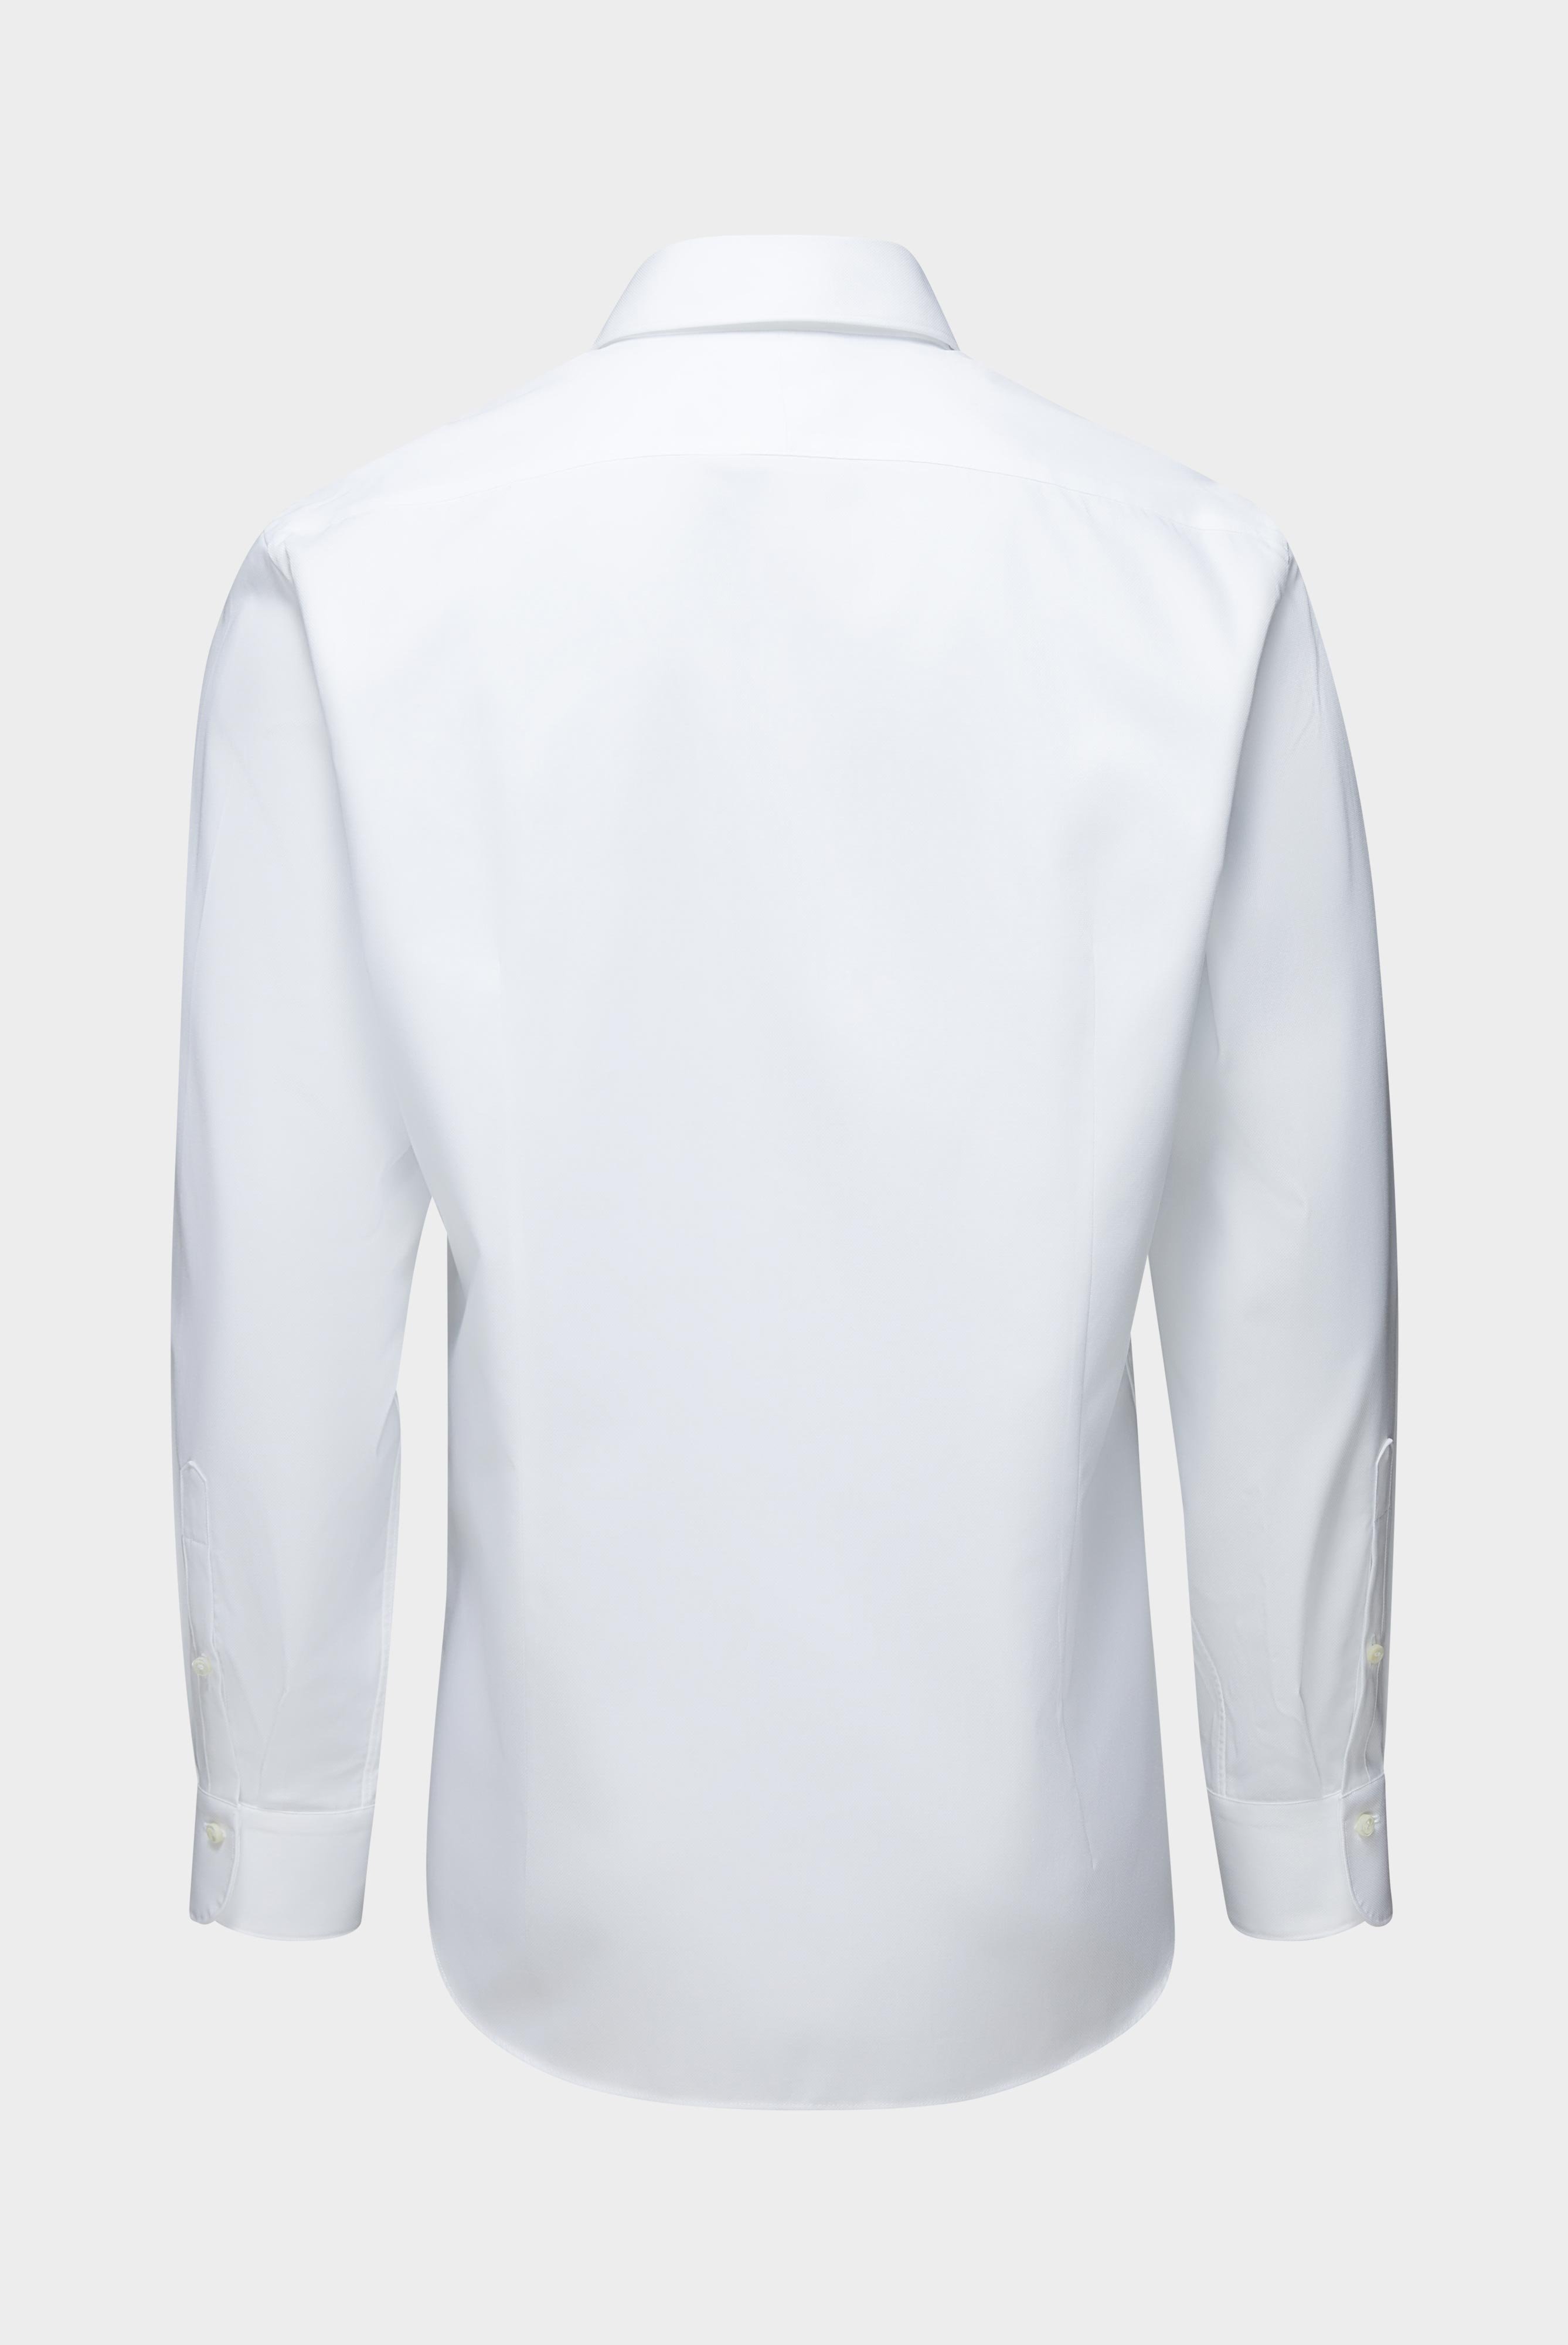 Business Shirts+Textured Sartorial Shirt Tailor Fit+20.2502.NV.151209.000.38